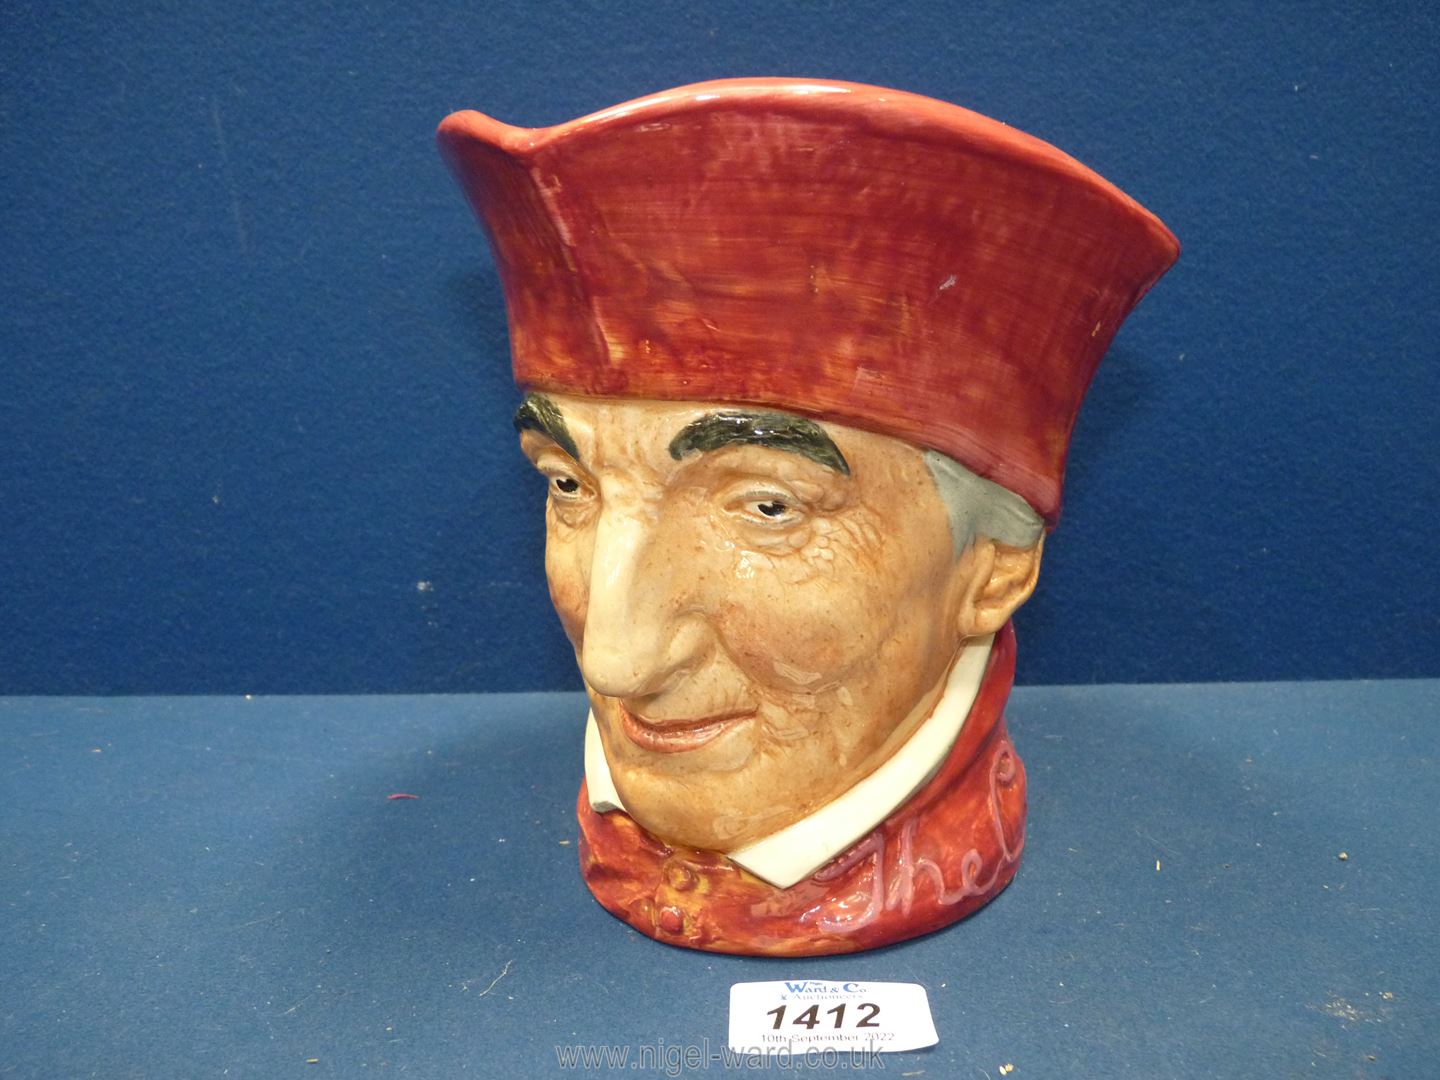 A Royal Doulton 'Cardinal' character jug.